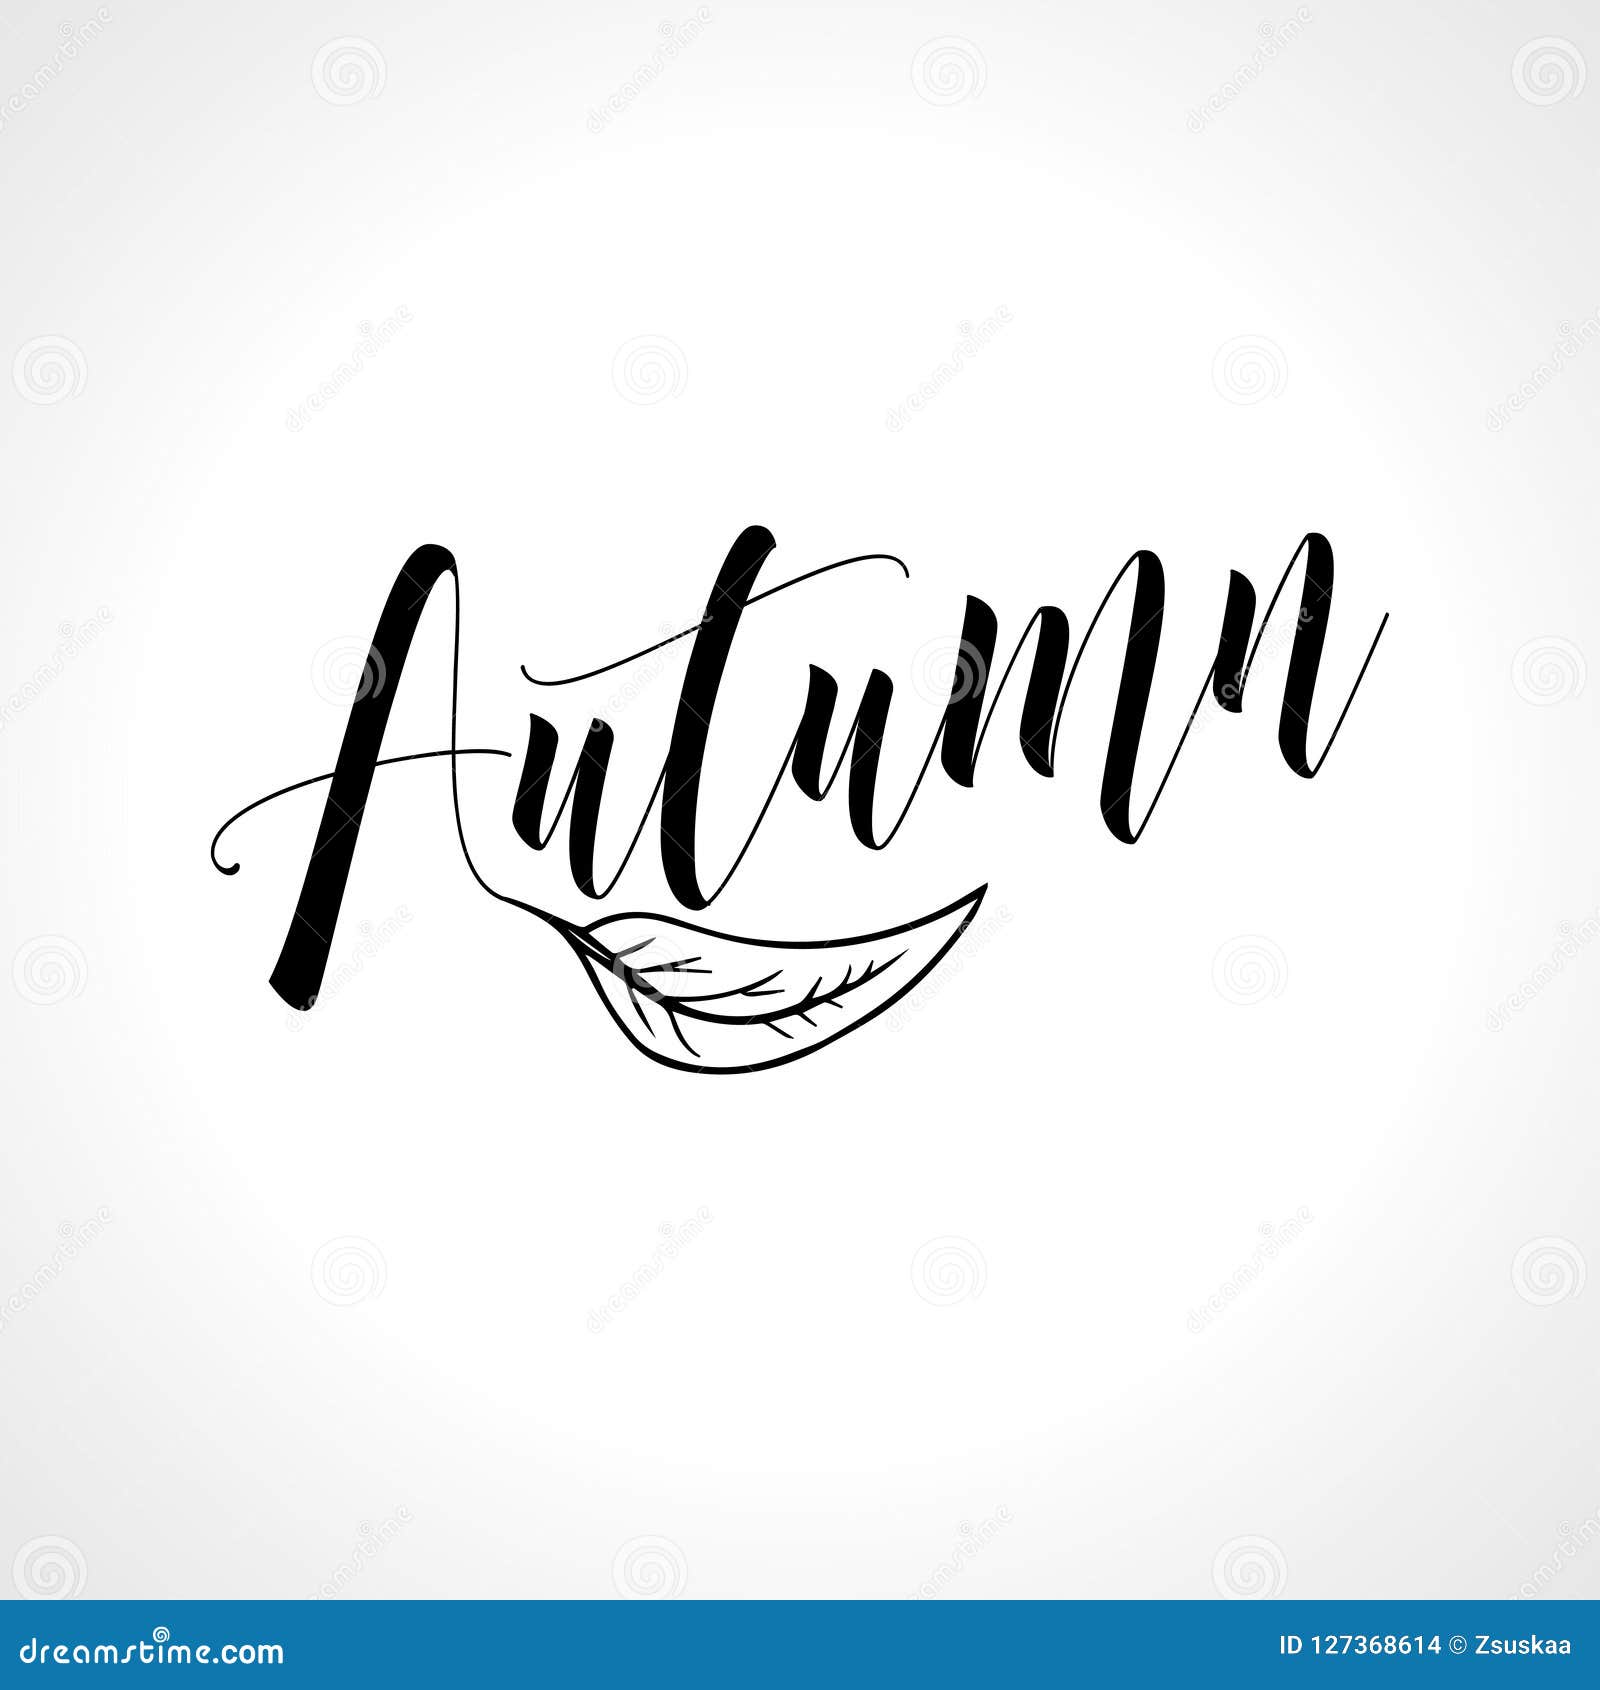 Falling script. Autumn красивая надпись. Осень на английском красивый шрифт. Осенние надписи на английском. Осенний леттеринг.